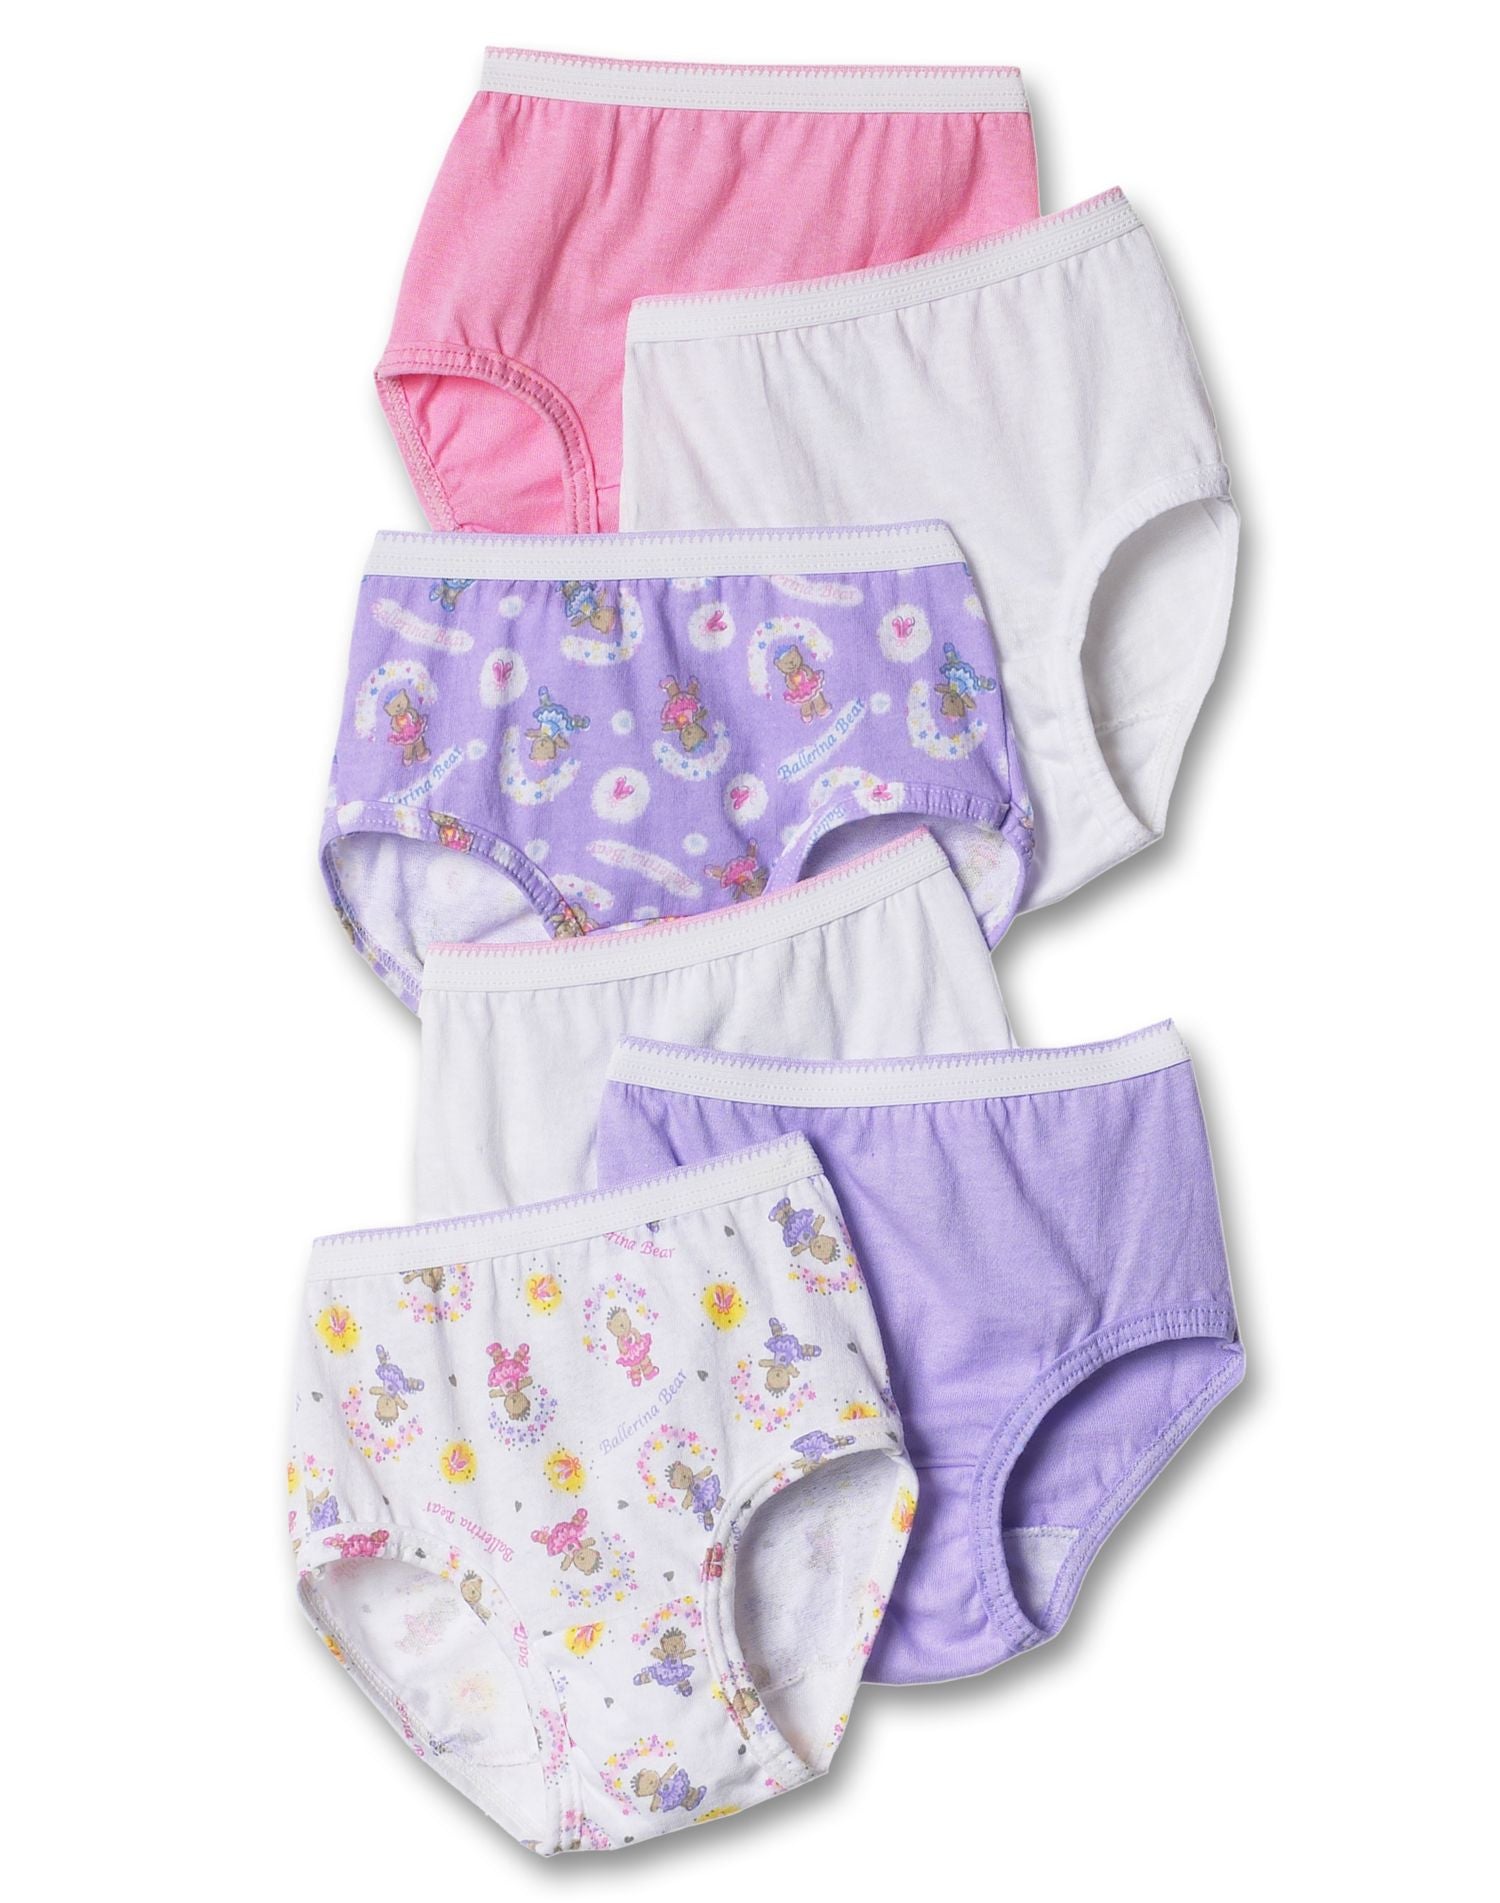 Hanes Pure Comfort Toddler Girls' Cotton Brief Underwear, 10-Pack